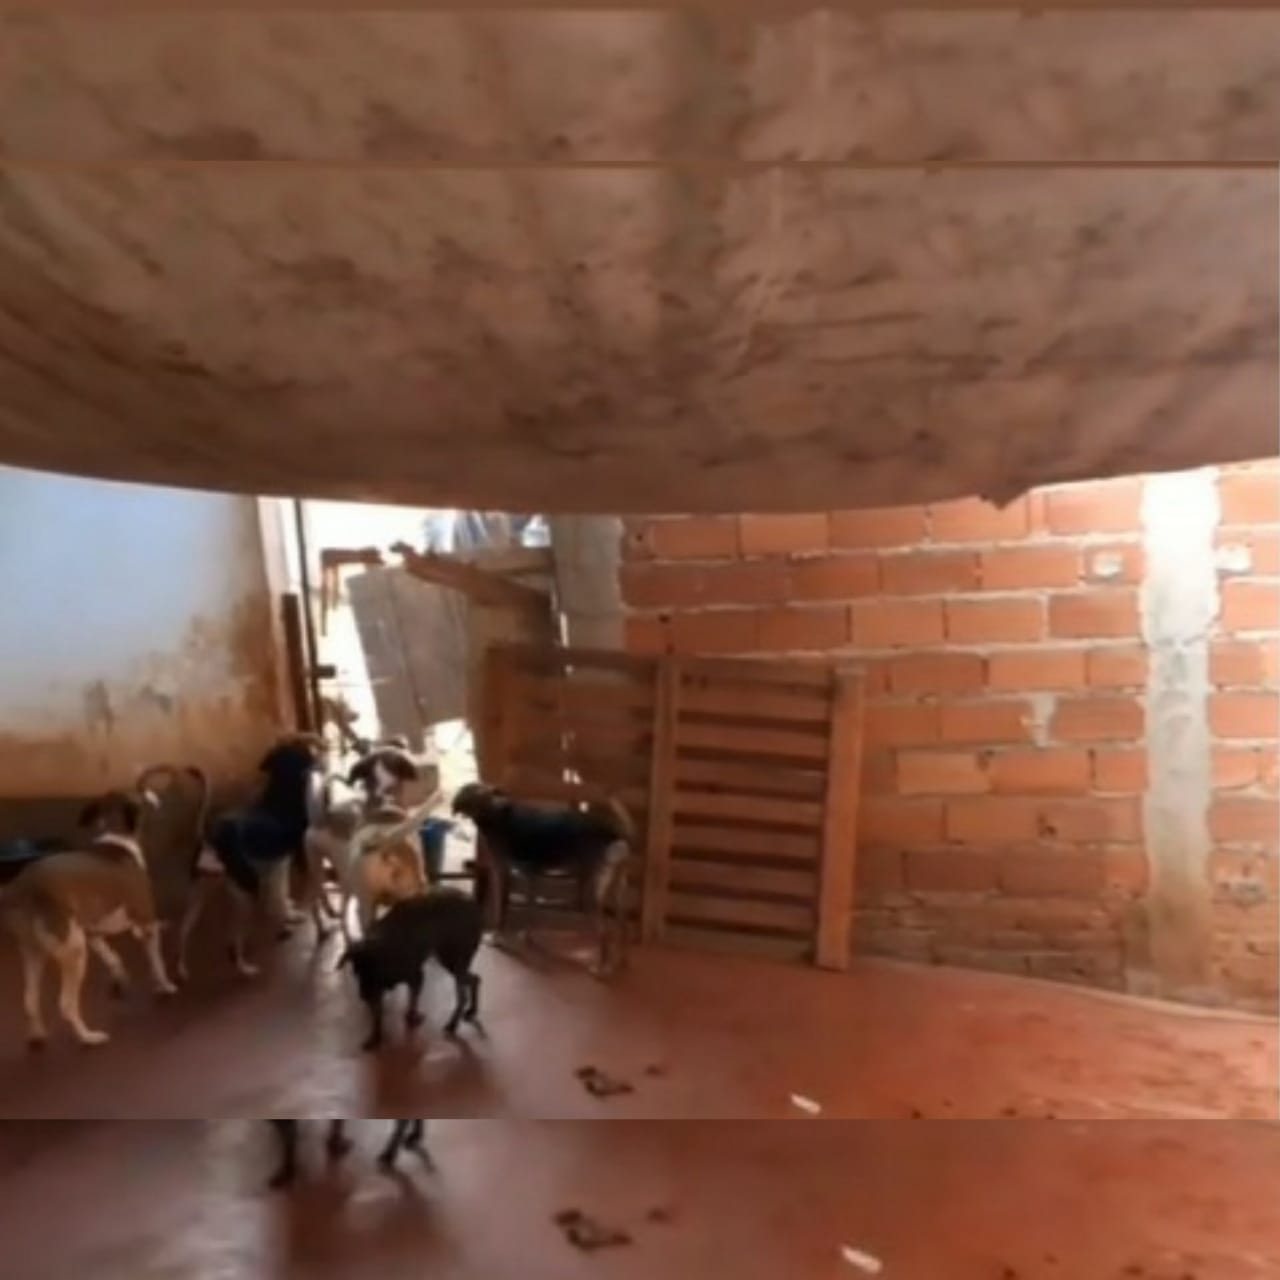 Com mais de 200 animais, abrigo de Goiânia passa por dificuldades financeiras e pede ajuda para não fechar as portas. (Foto: reprodução)